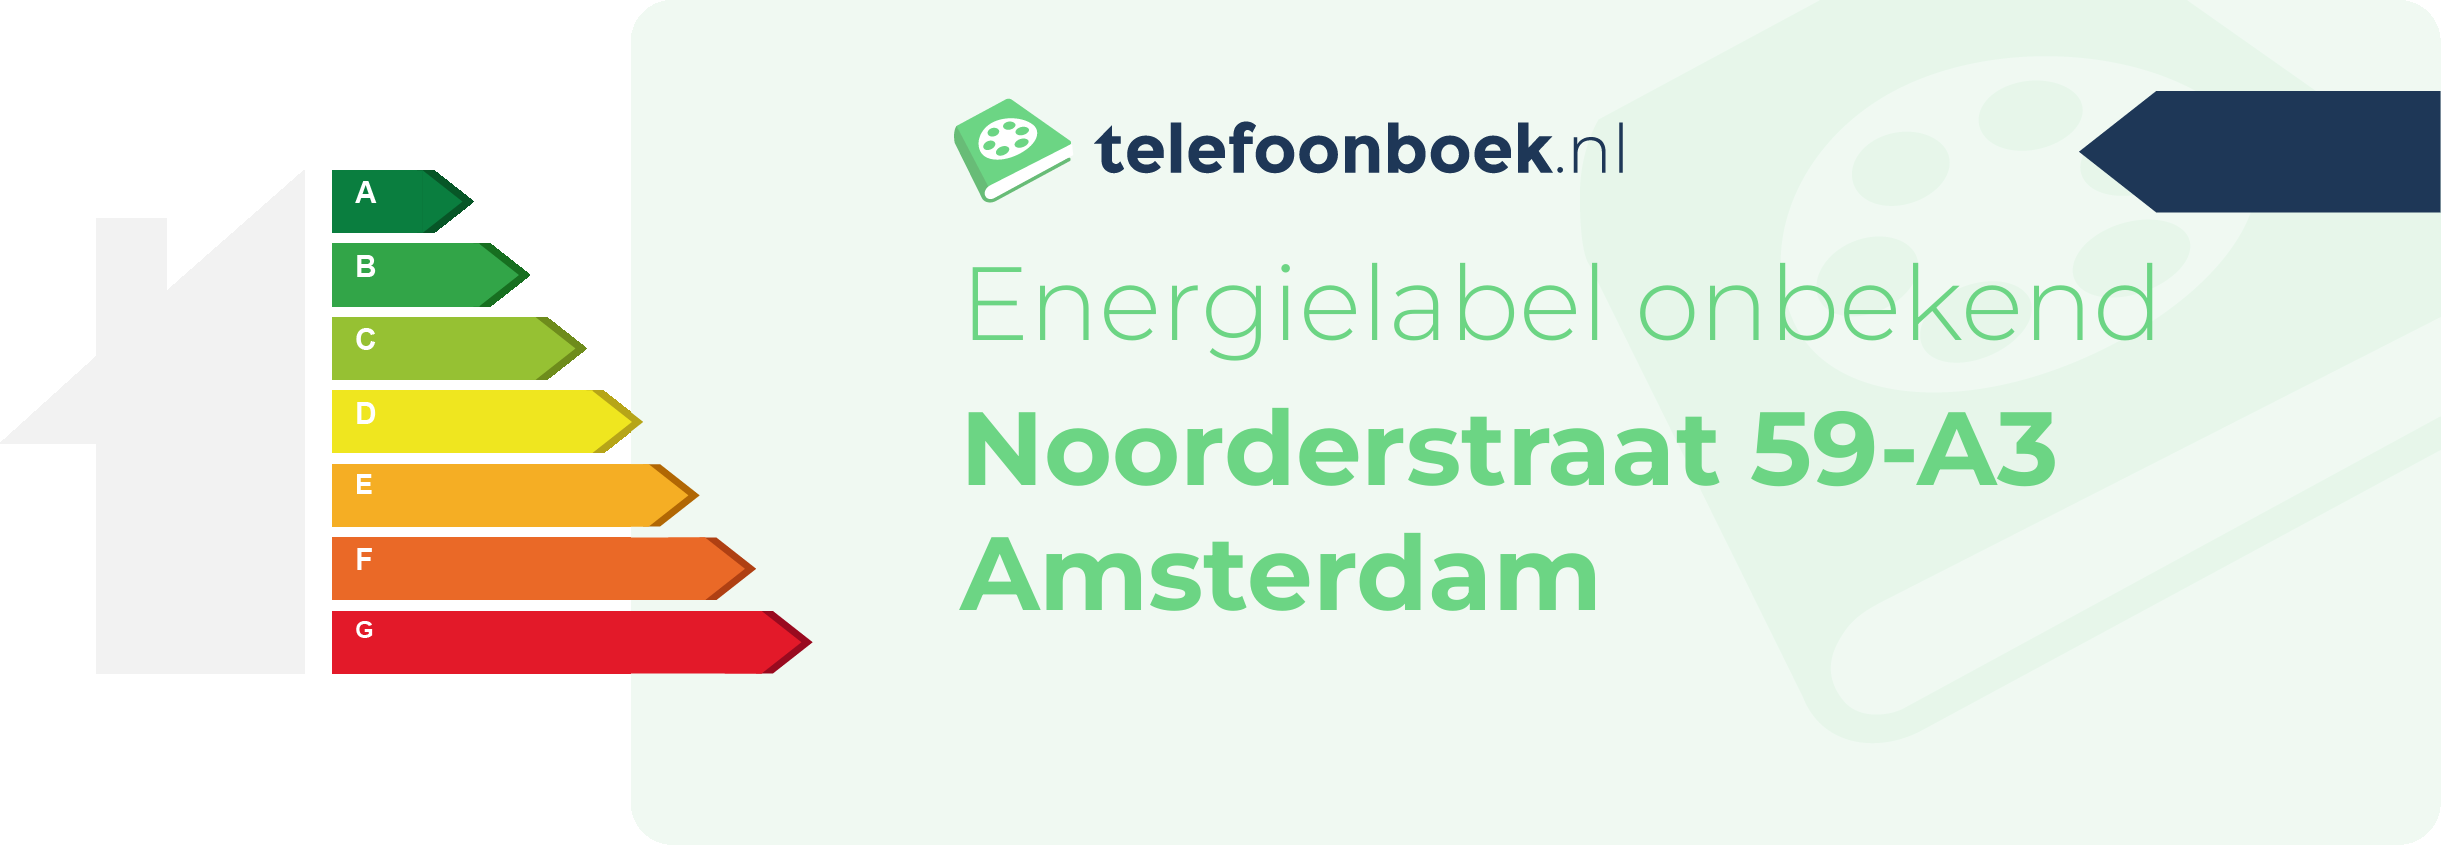 Energielabel Noorderstraat 59-A3 Amsterdam